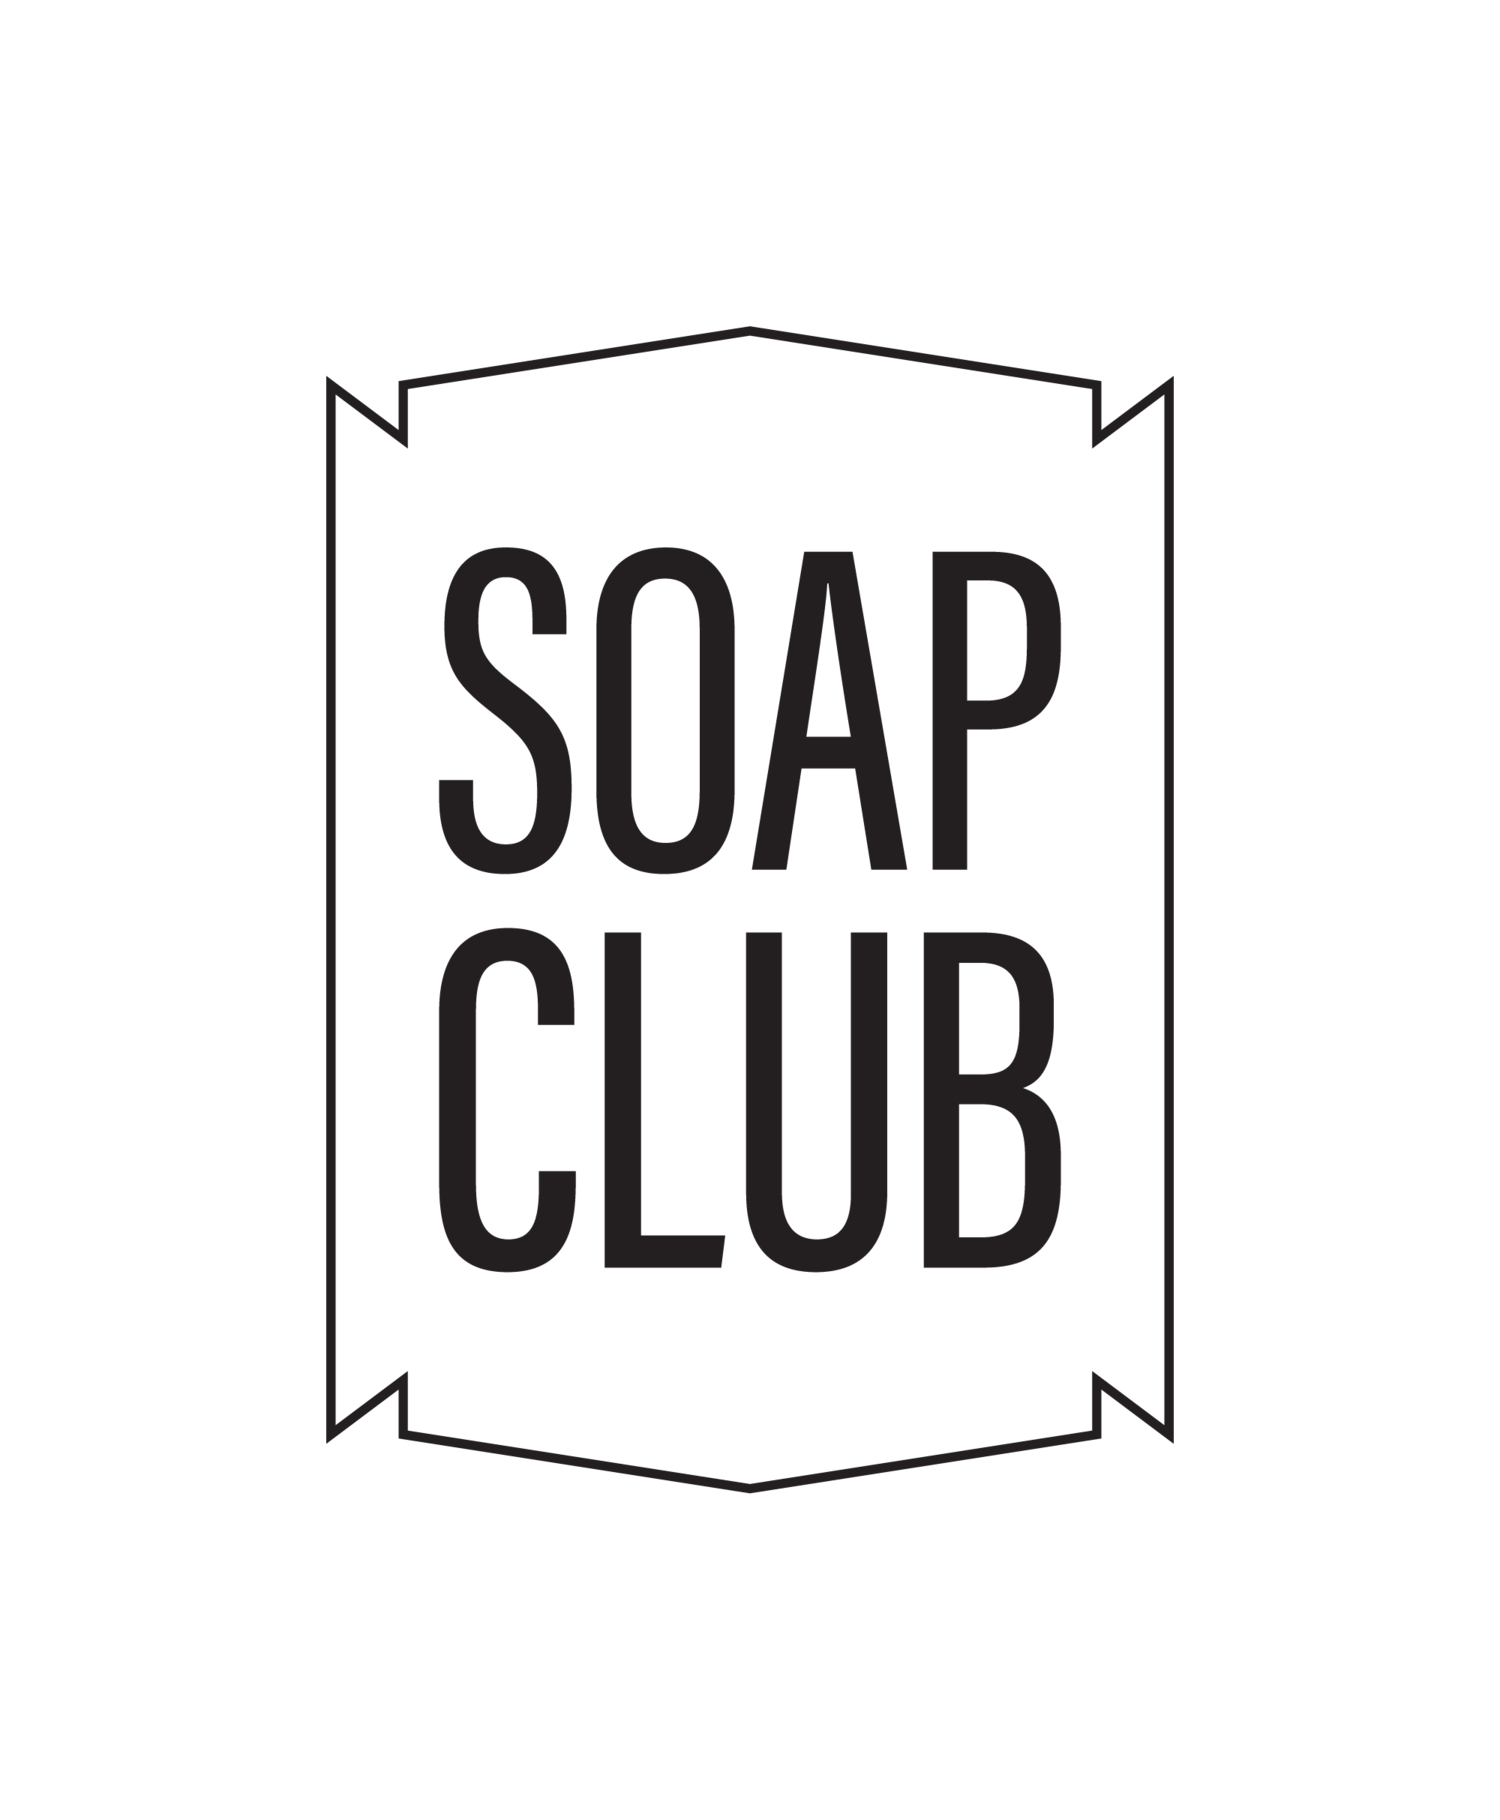 Soap Club